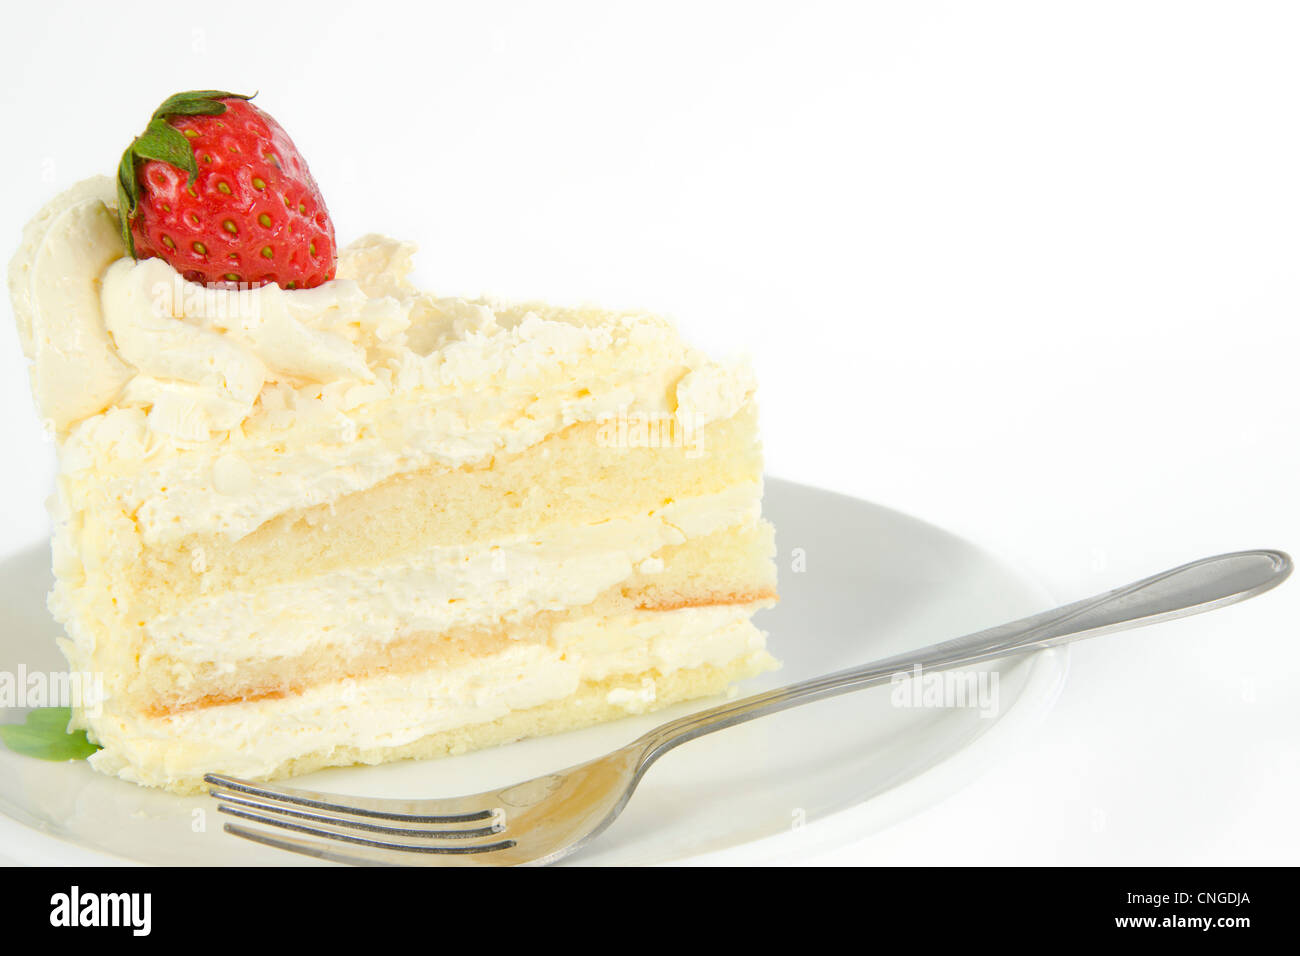 Délicieux gâteau vanille fraise avec décorer sur le dessus Banque D'Images